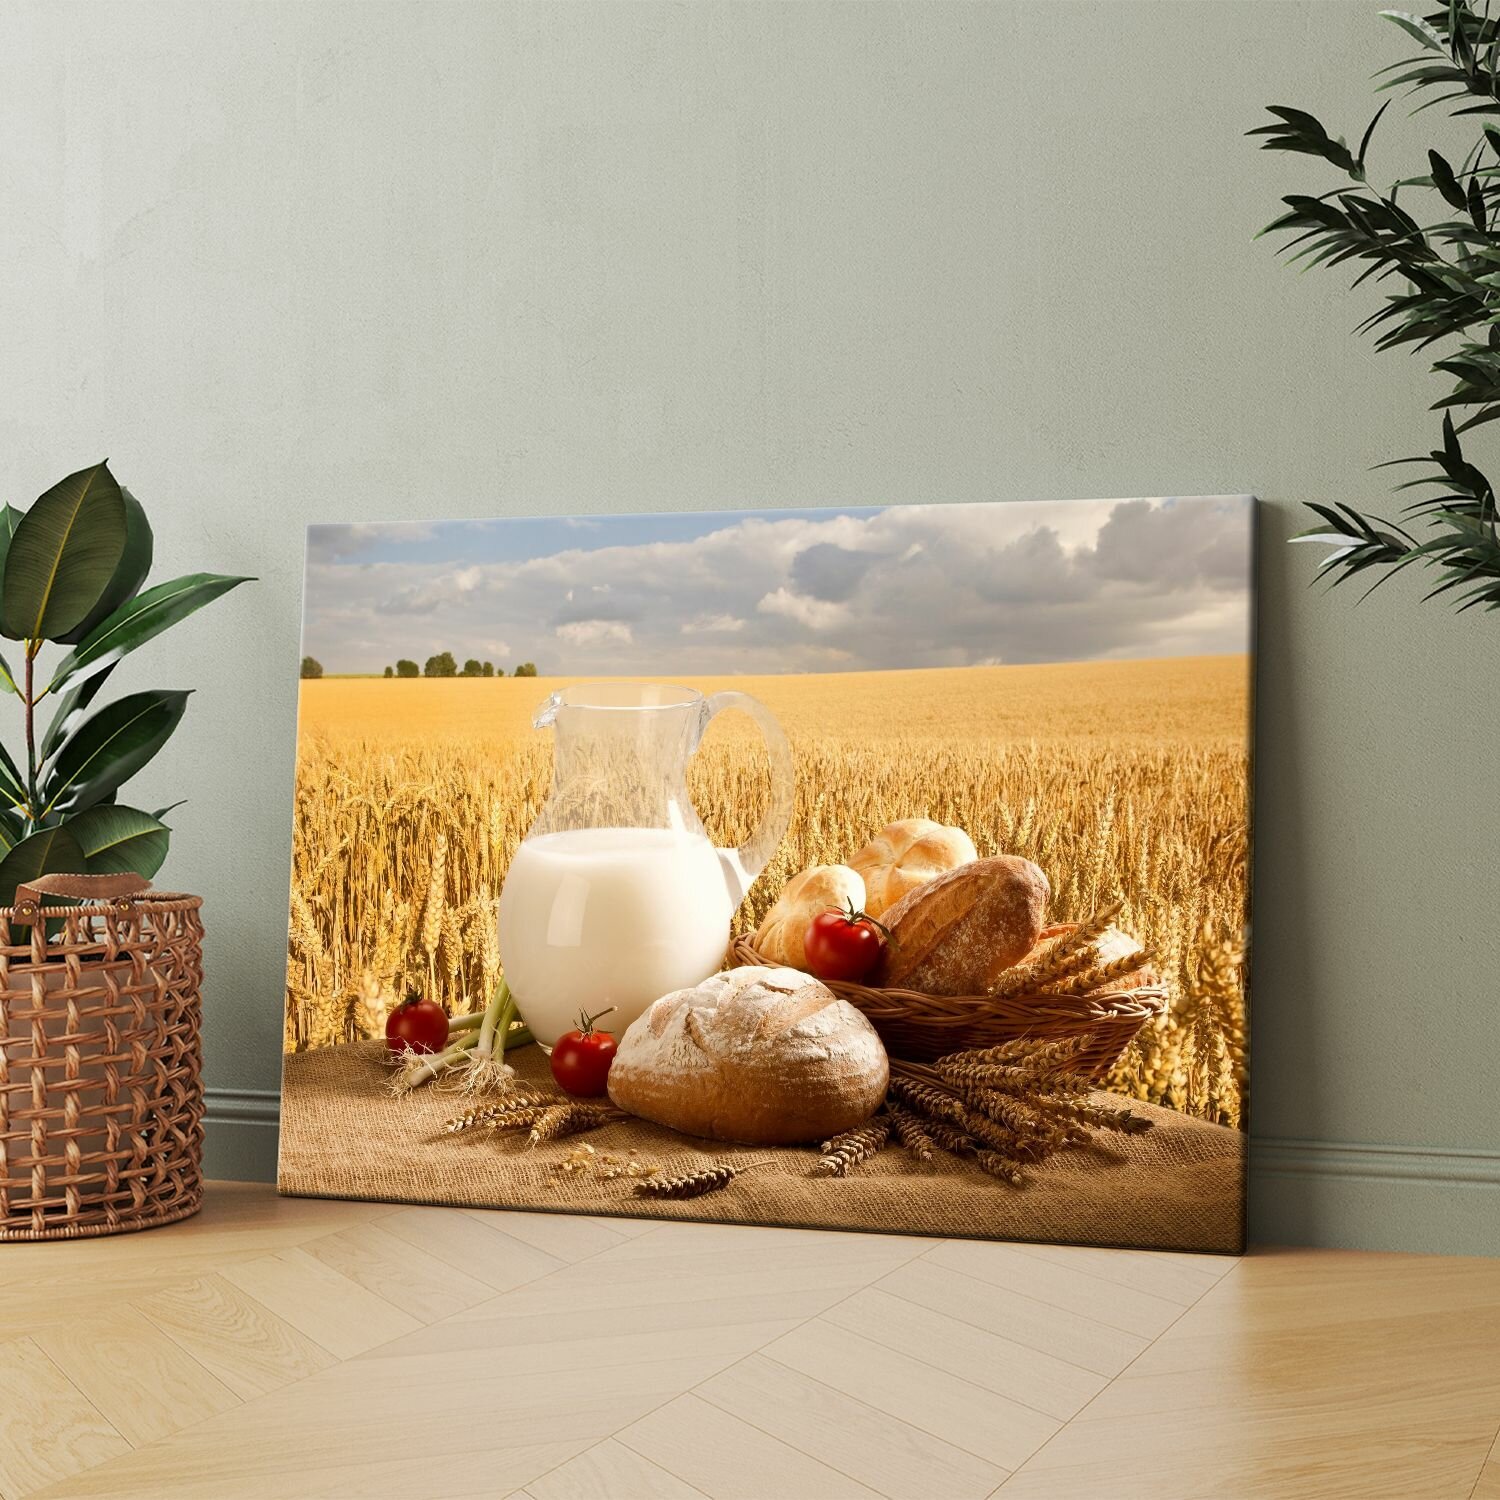 Картина на холсте (Кувшин с молоком, хлебом и помидорами на столе) 50x70 см. Интерьерная, на стену.